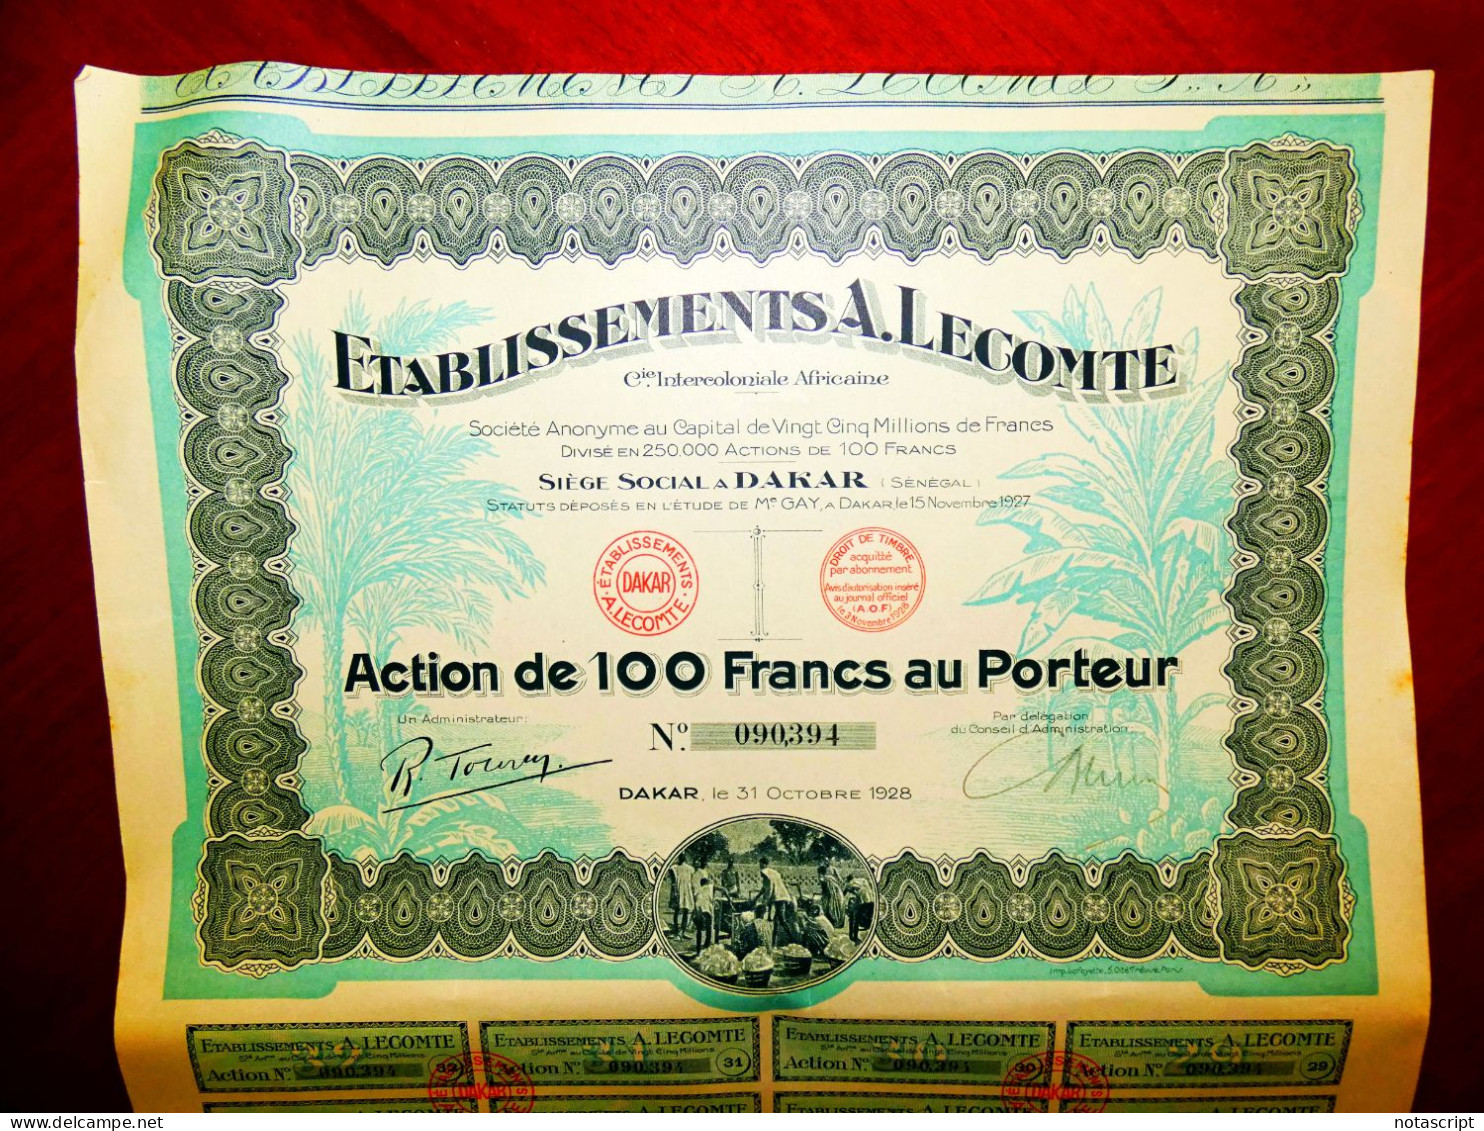 Etablissements A. Lecompte, Dakar, Senegal 1928 Share Certificate - Africa